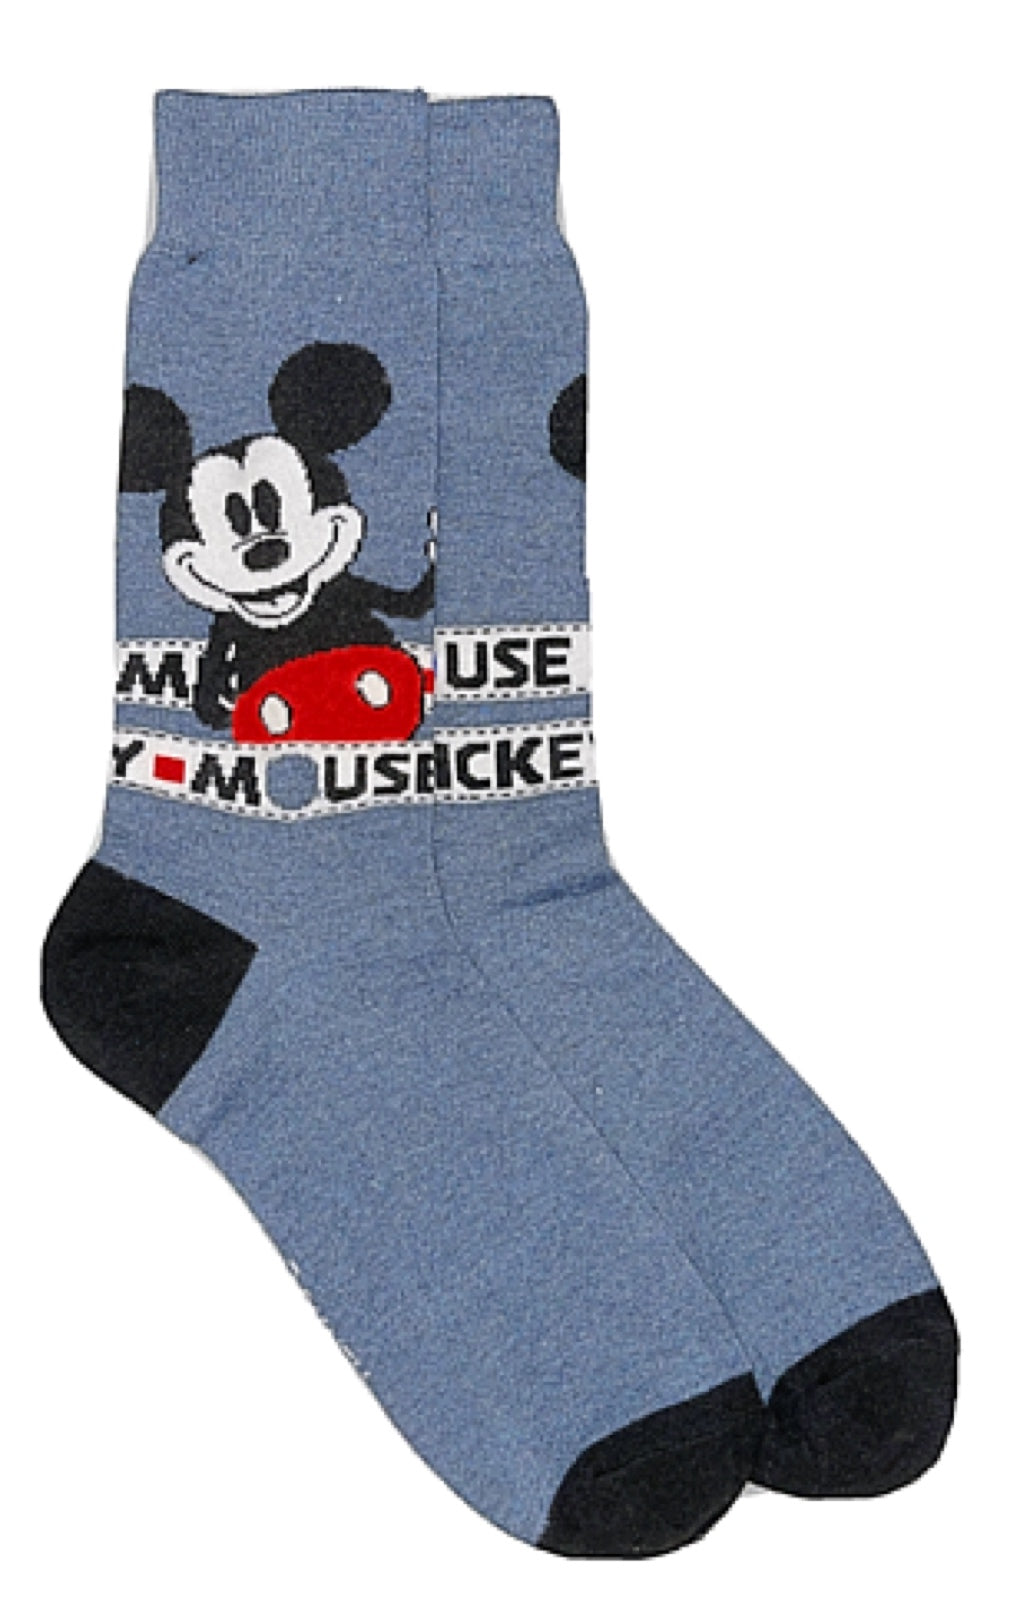 Disney Mens Socks, Novelty Socks Mickey Mouse 5 Pack Socks